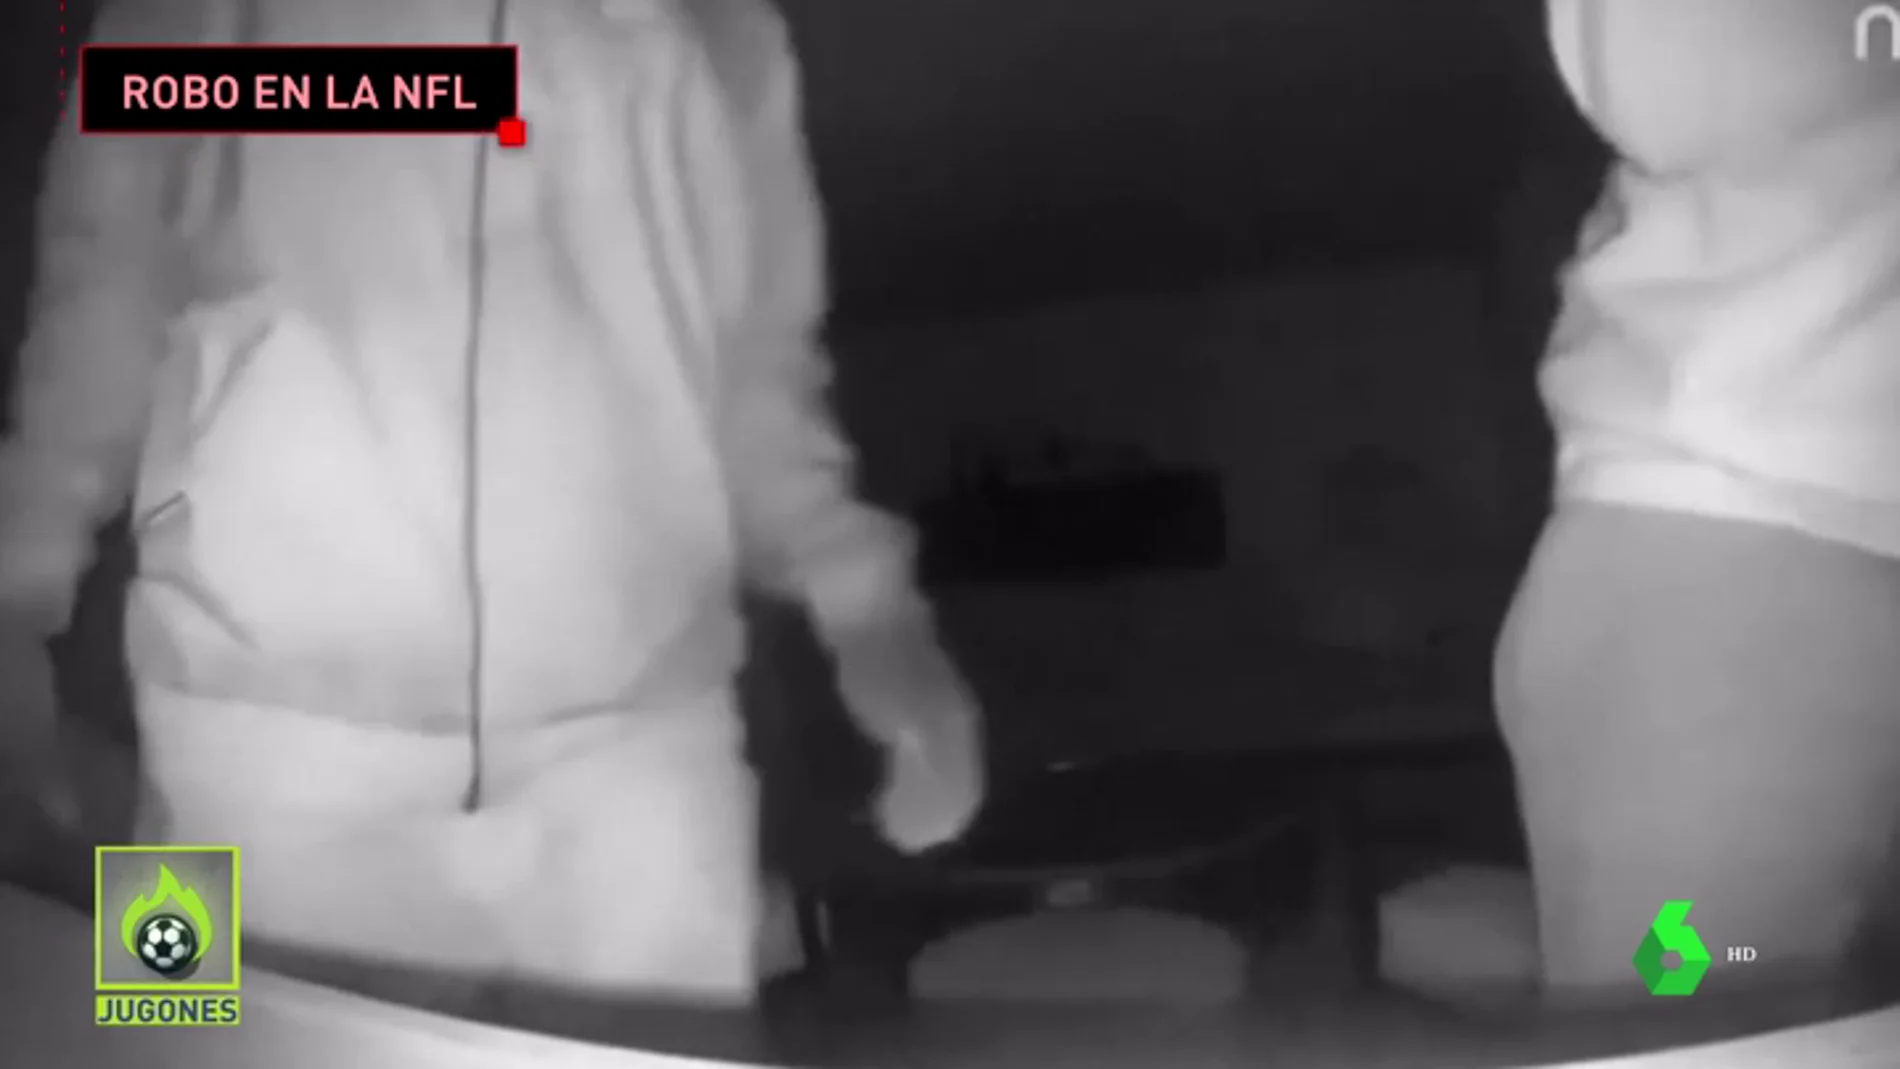 Presión liberada: Spencer Paysinger decide compartir el vídeo donde le roban su anillo de la NFL 